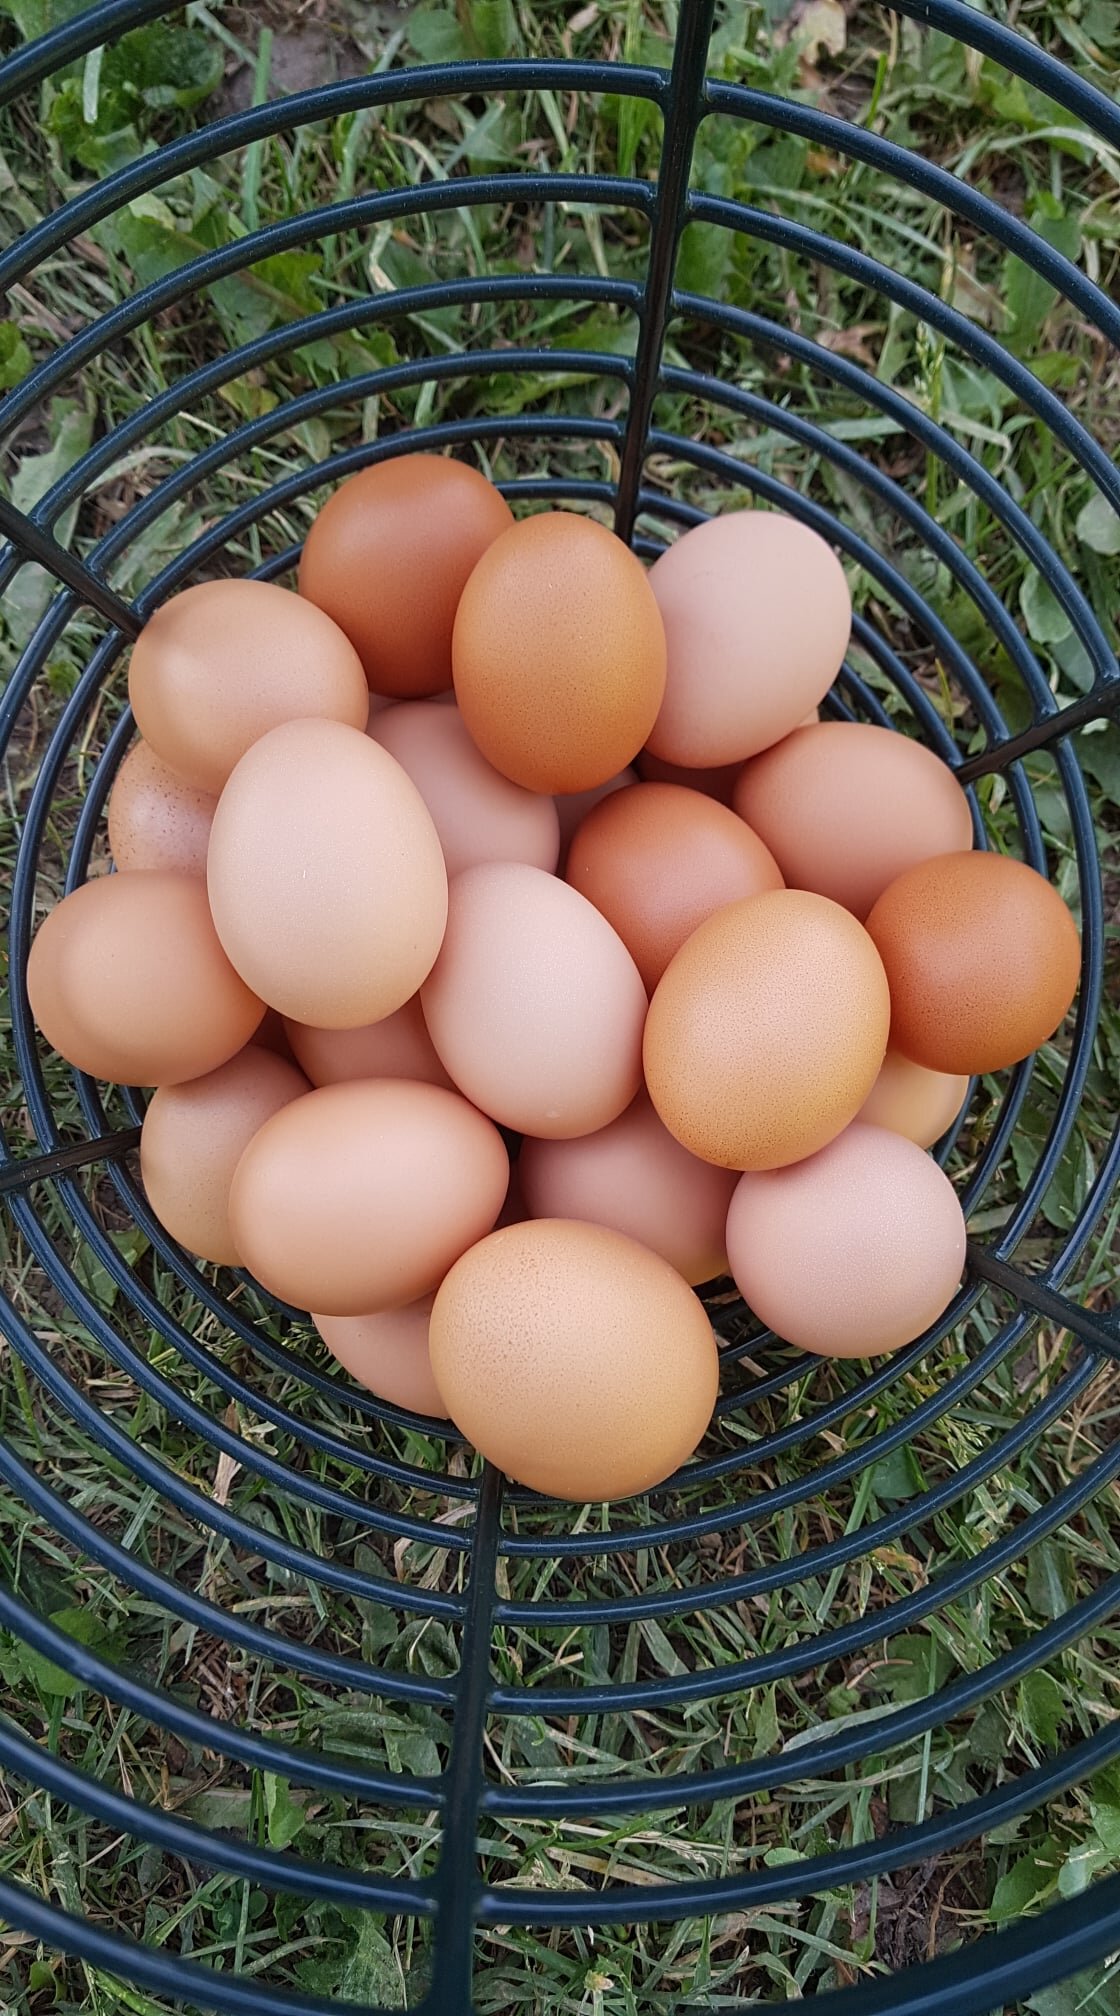 eggs in basket.jpg